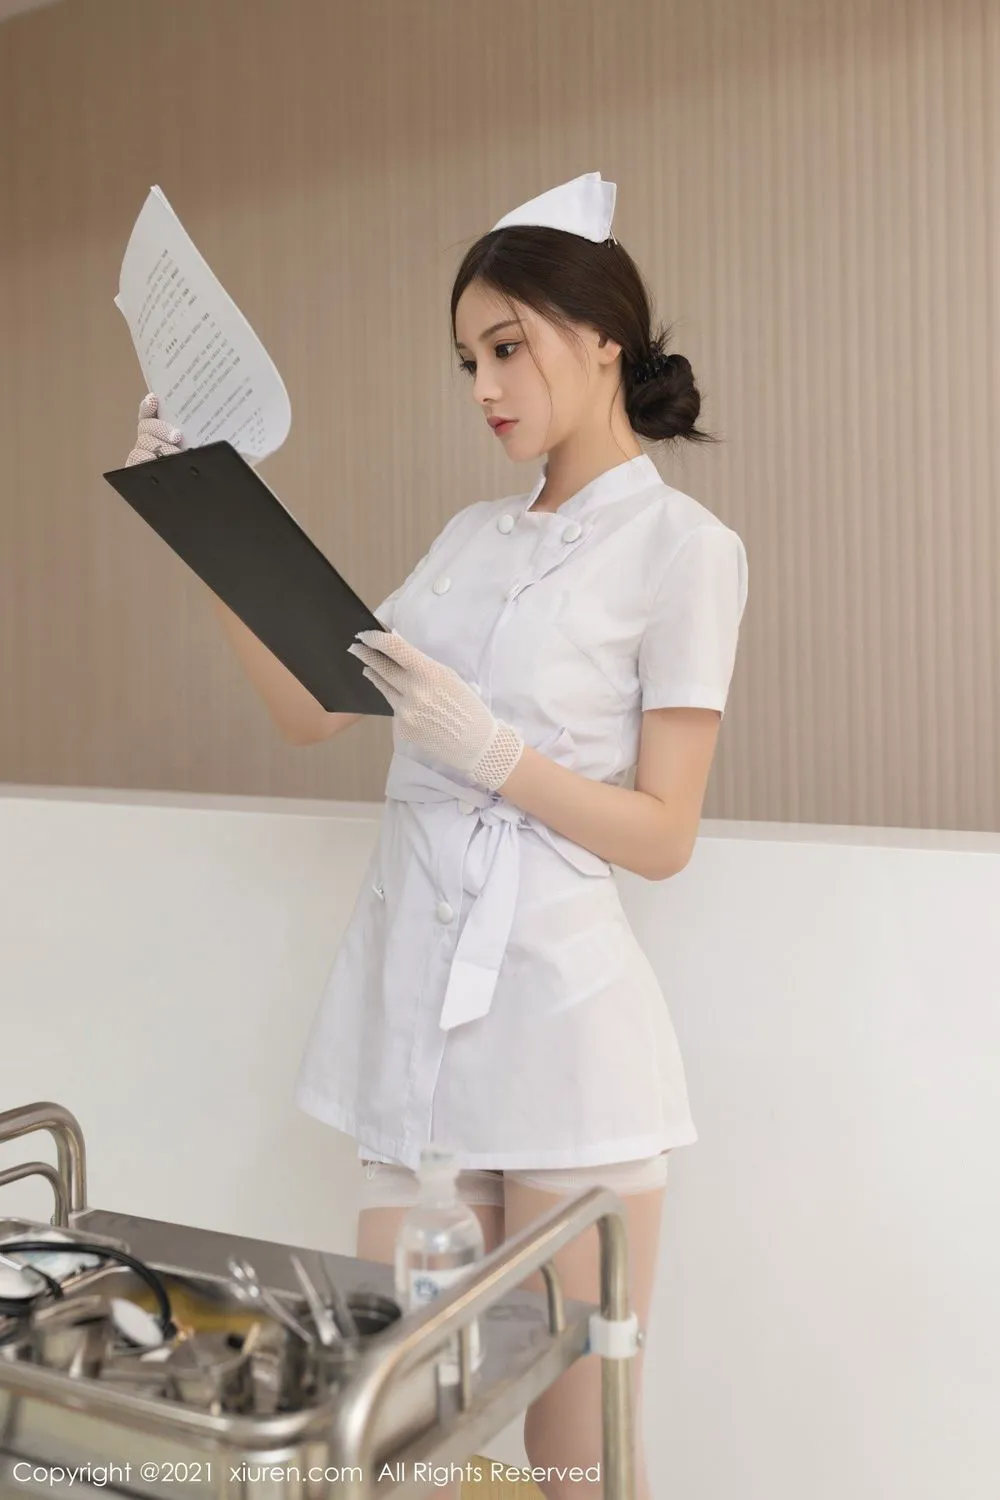 王心怡白护士制服与丝袜美腿性感写真